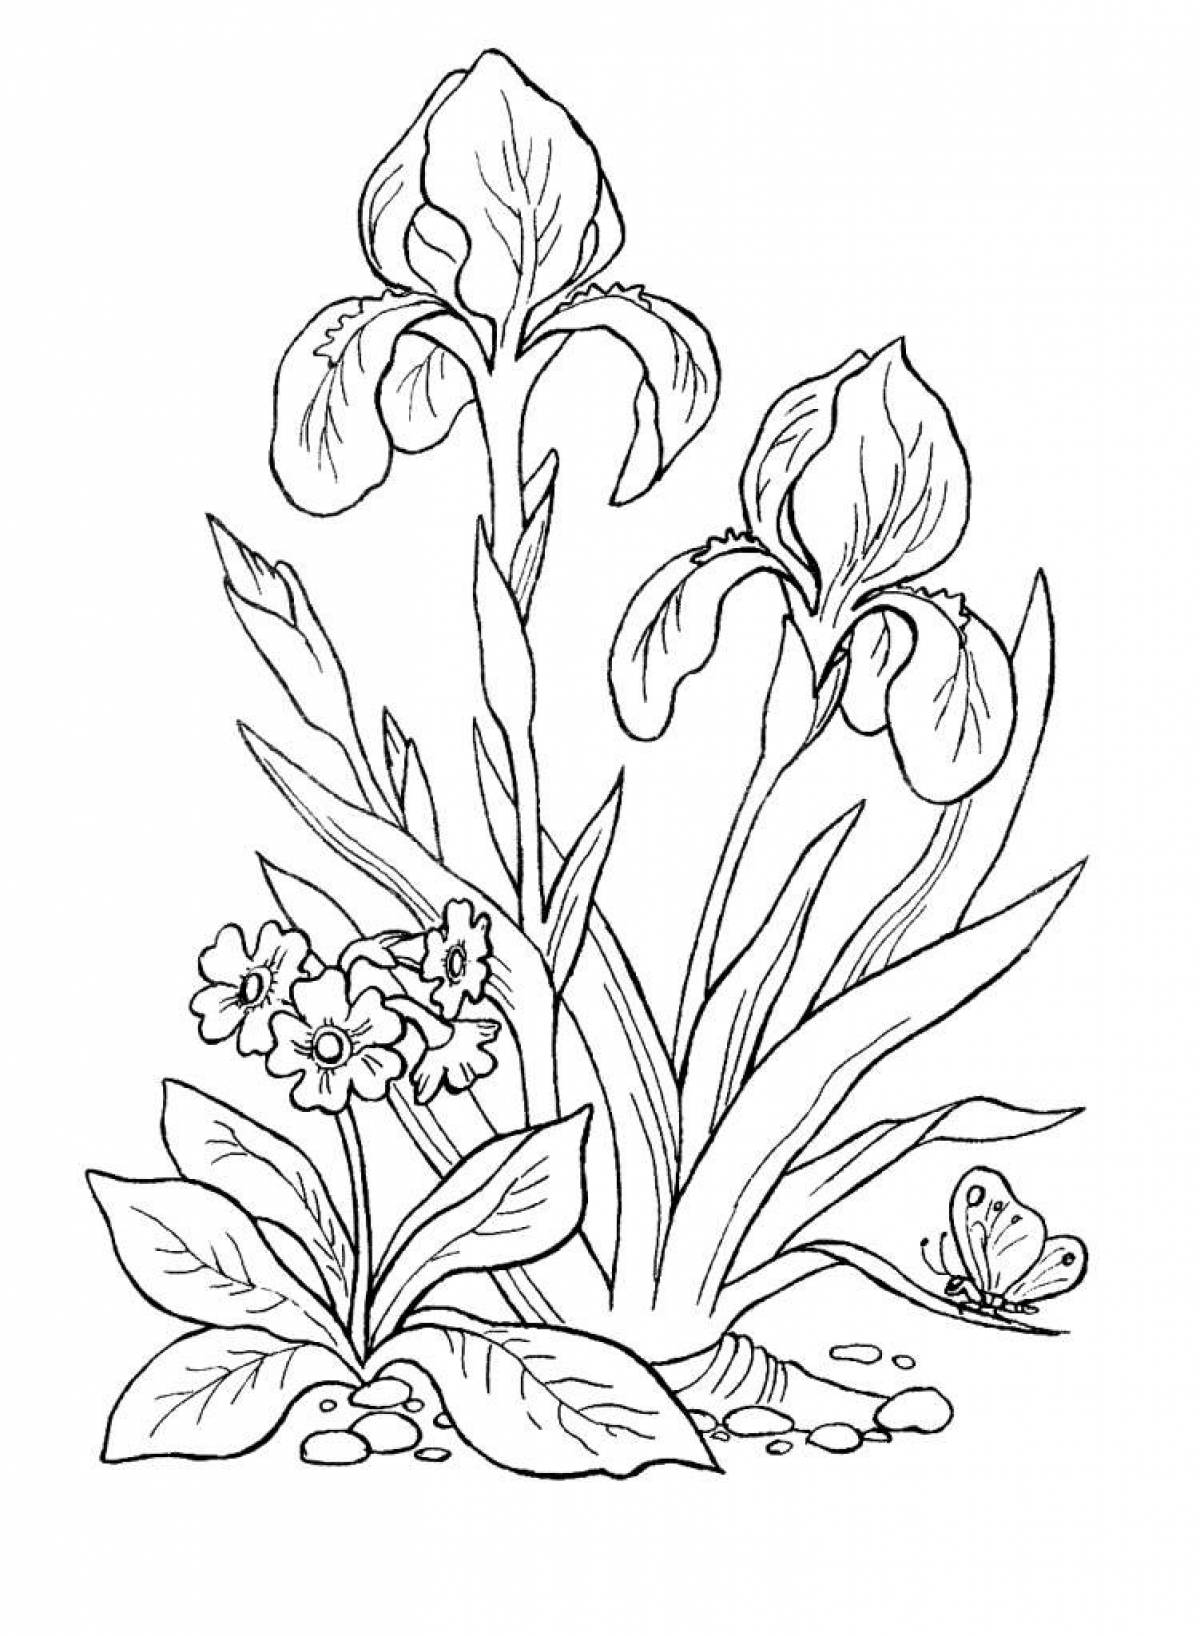 Irises and primrose